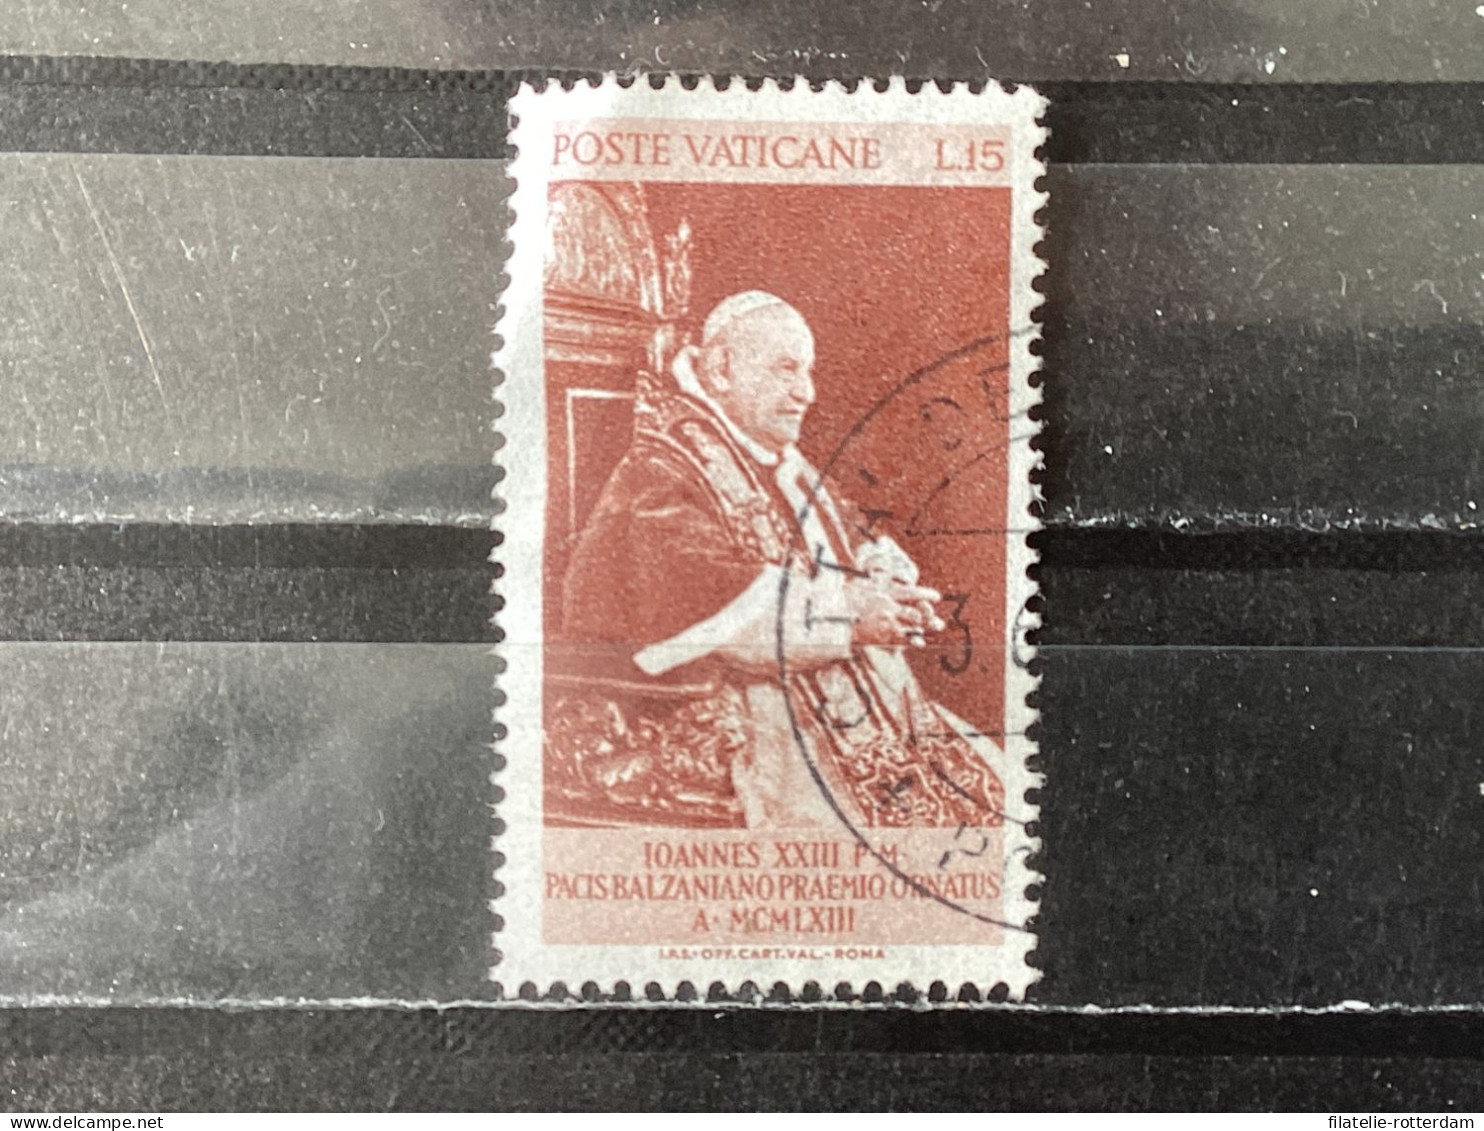 Vatican City / Vaticaanstad - Balzan Price For Peace (15) 1963 - Usati